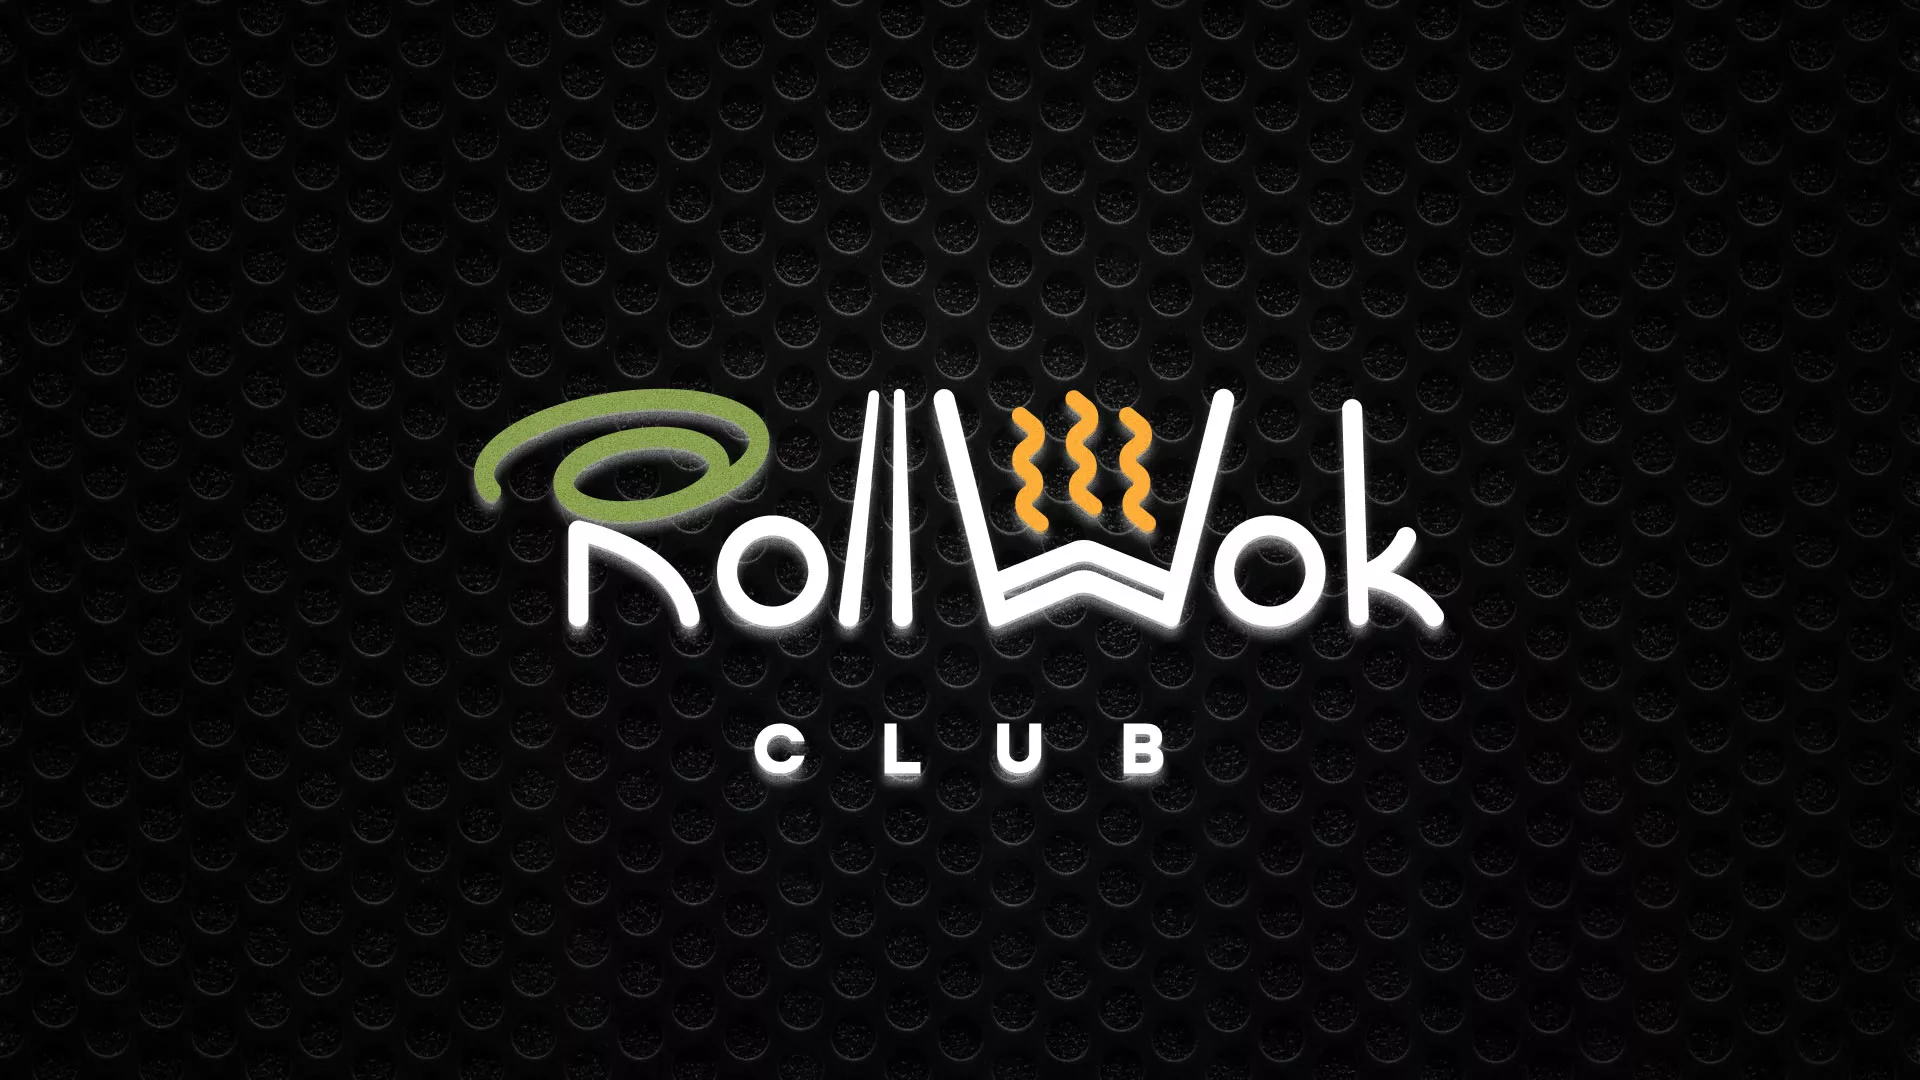 Брендирование торговых точек суши-бара «Roll Wok Club» в Казани